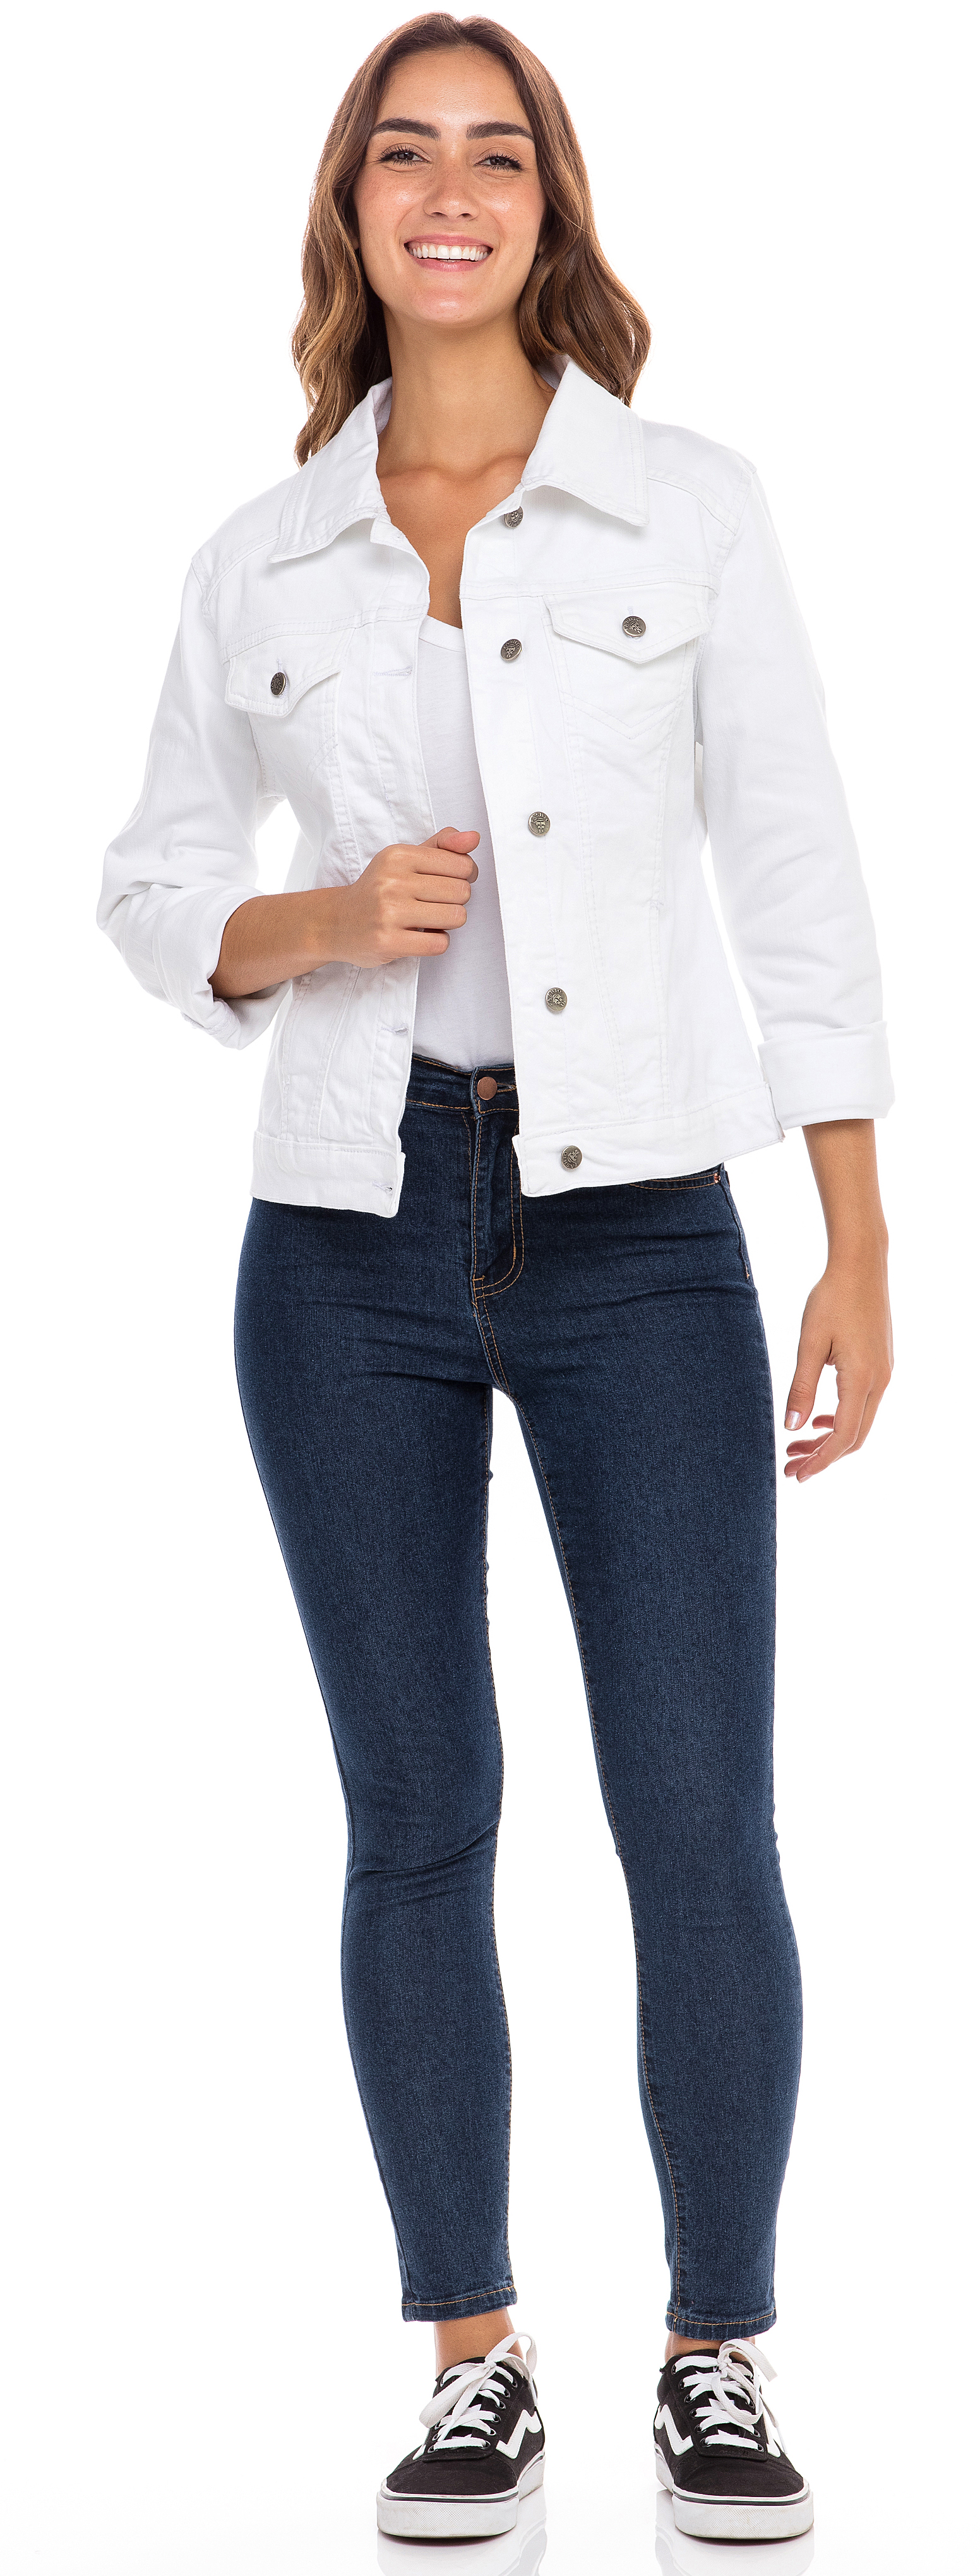 SKYLINEWEARS Women Denim Jacket Button UP Long Sleeve Ladies Stretch Trucker Jean Jackets - image 3 of 5